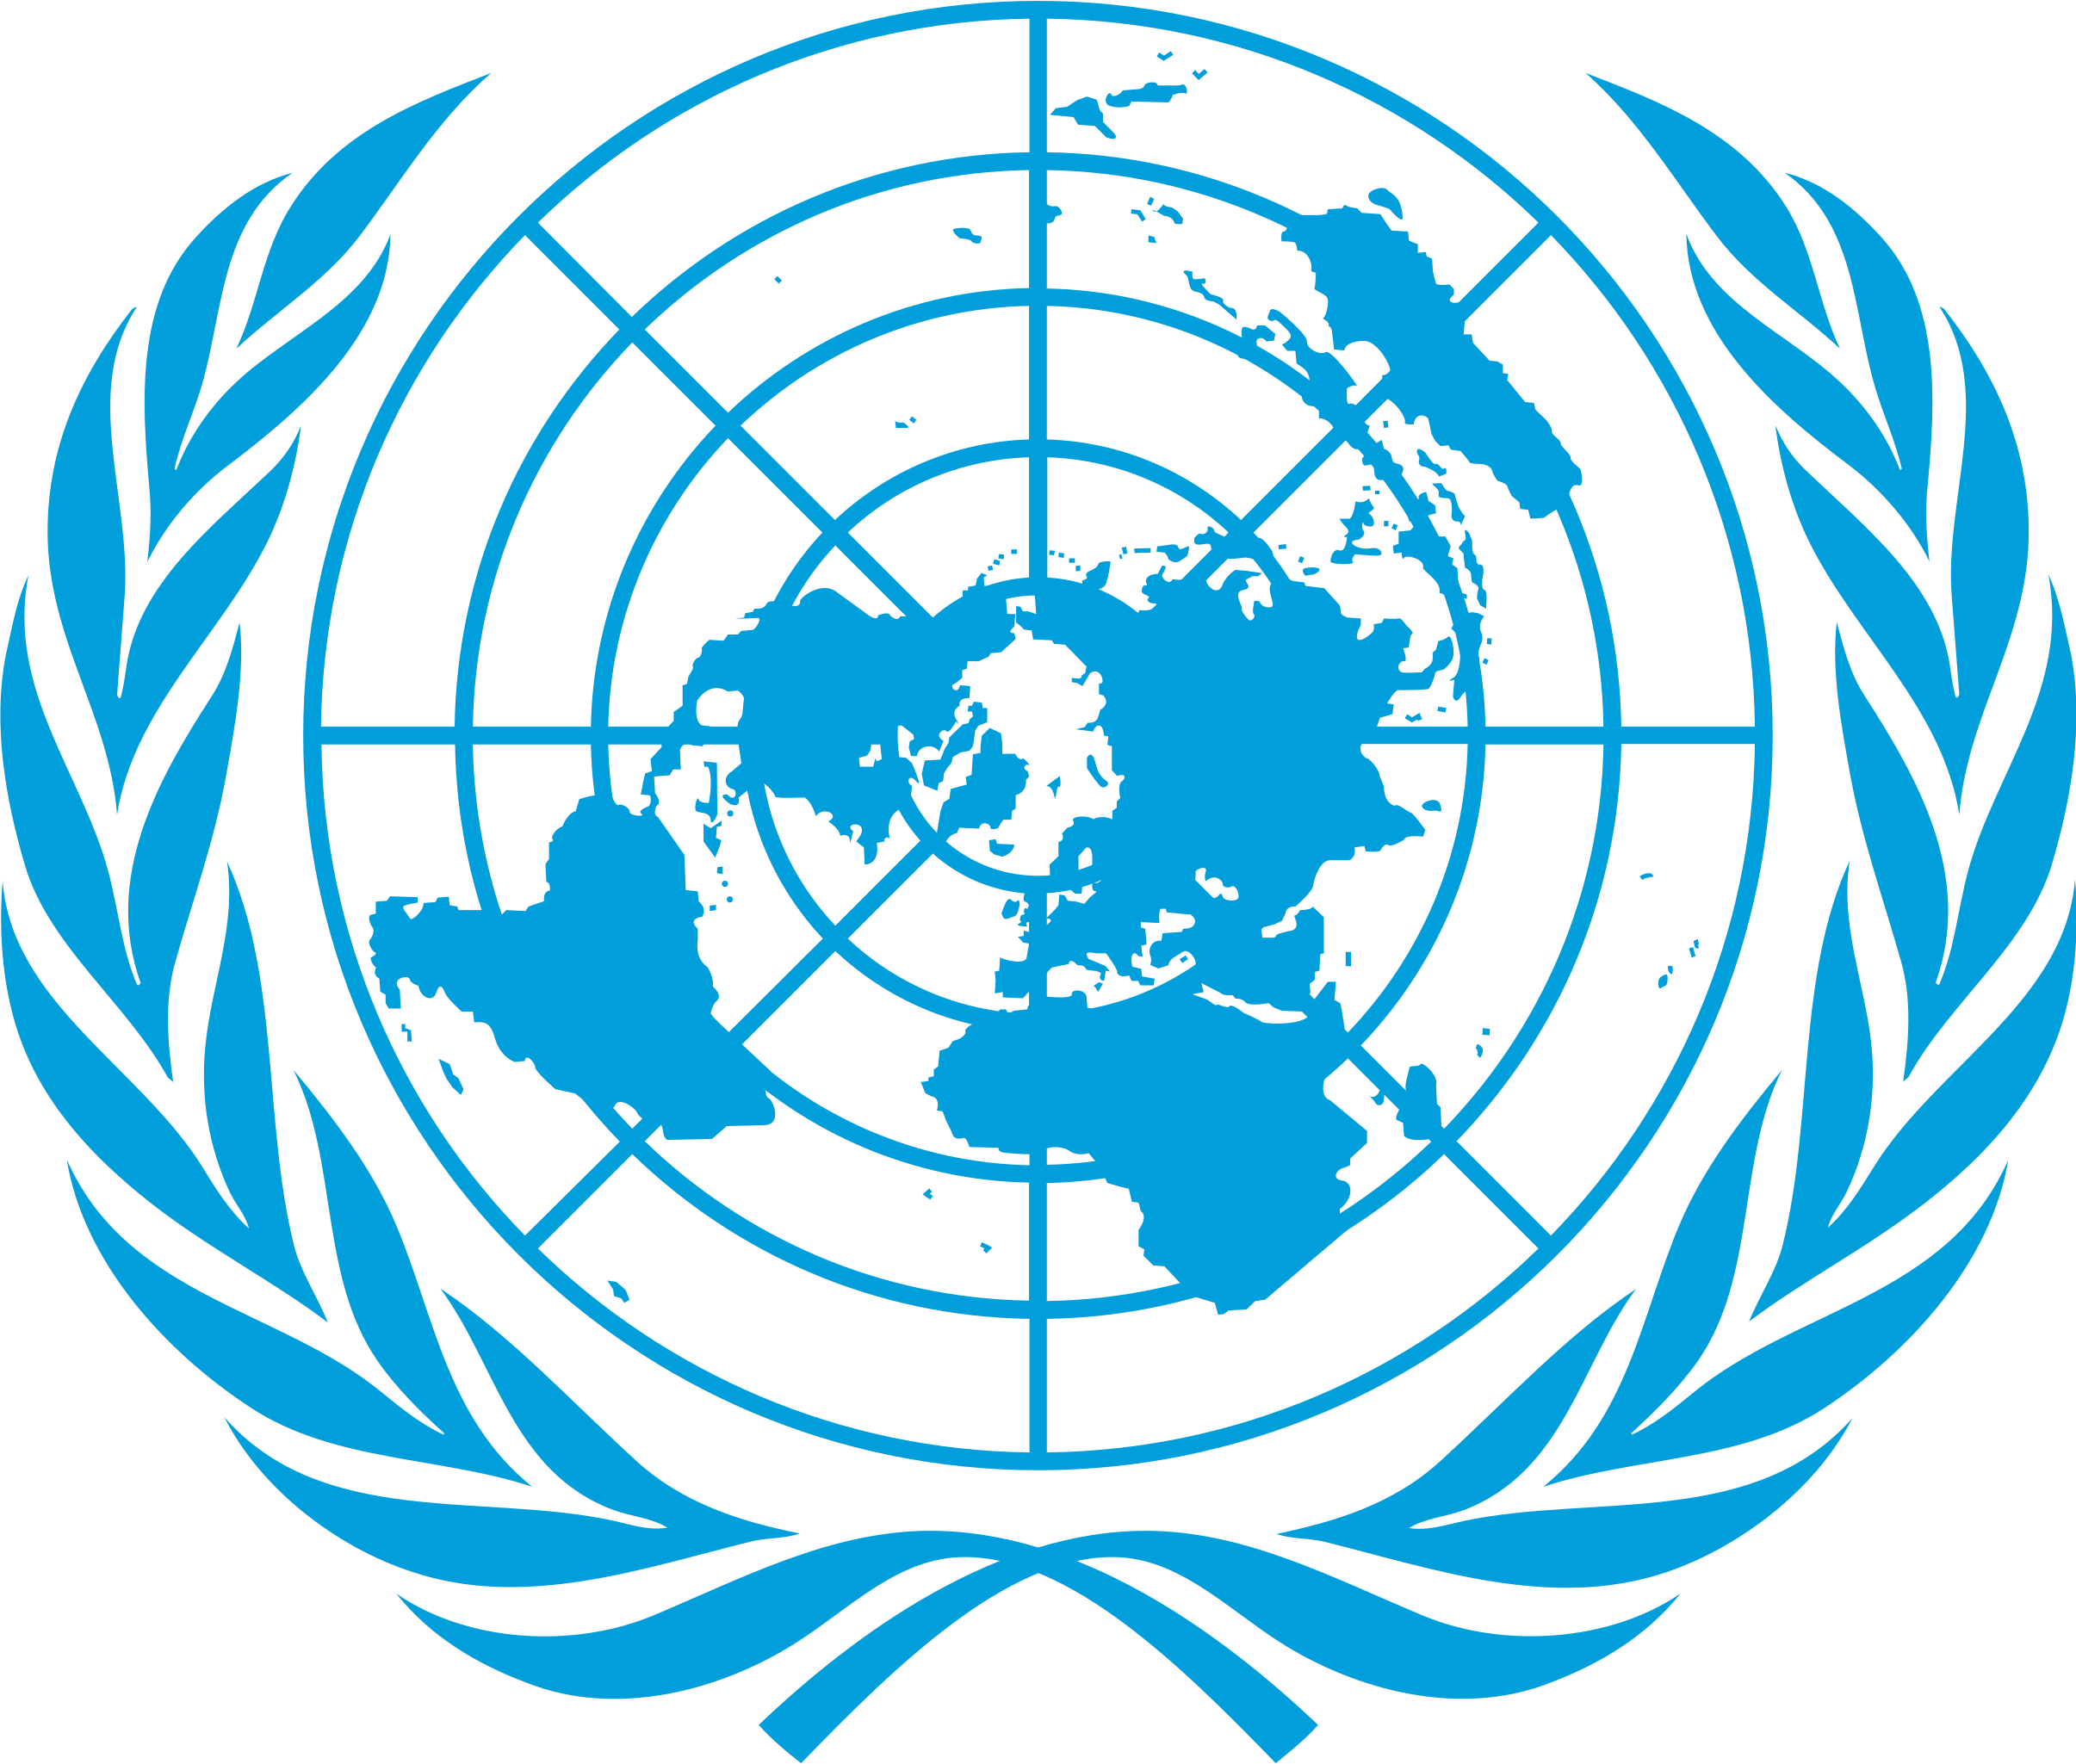 La ONU en las redes sociales | Naciones Unidas